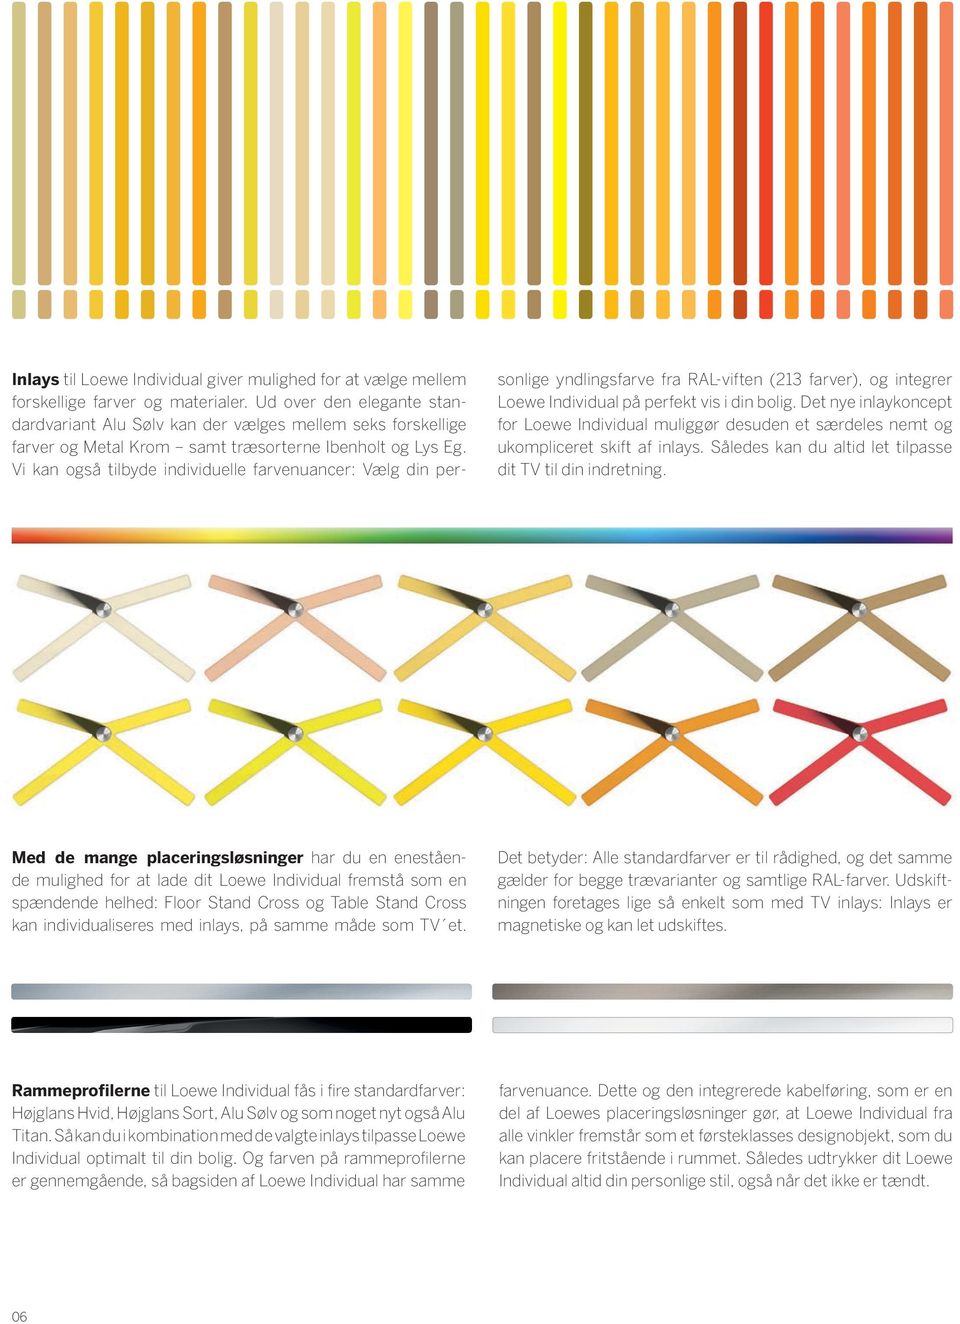 Vi kan også tilbyde individuelle farvenuancer: Vælg din personlige yndlingsfarve fra RAL-viften (213 farver), og integrer Loewe Individual på perfekt vis i din bolig.